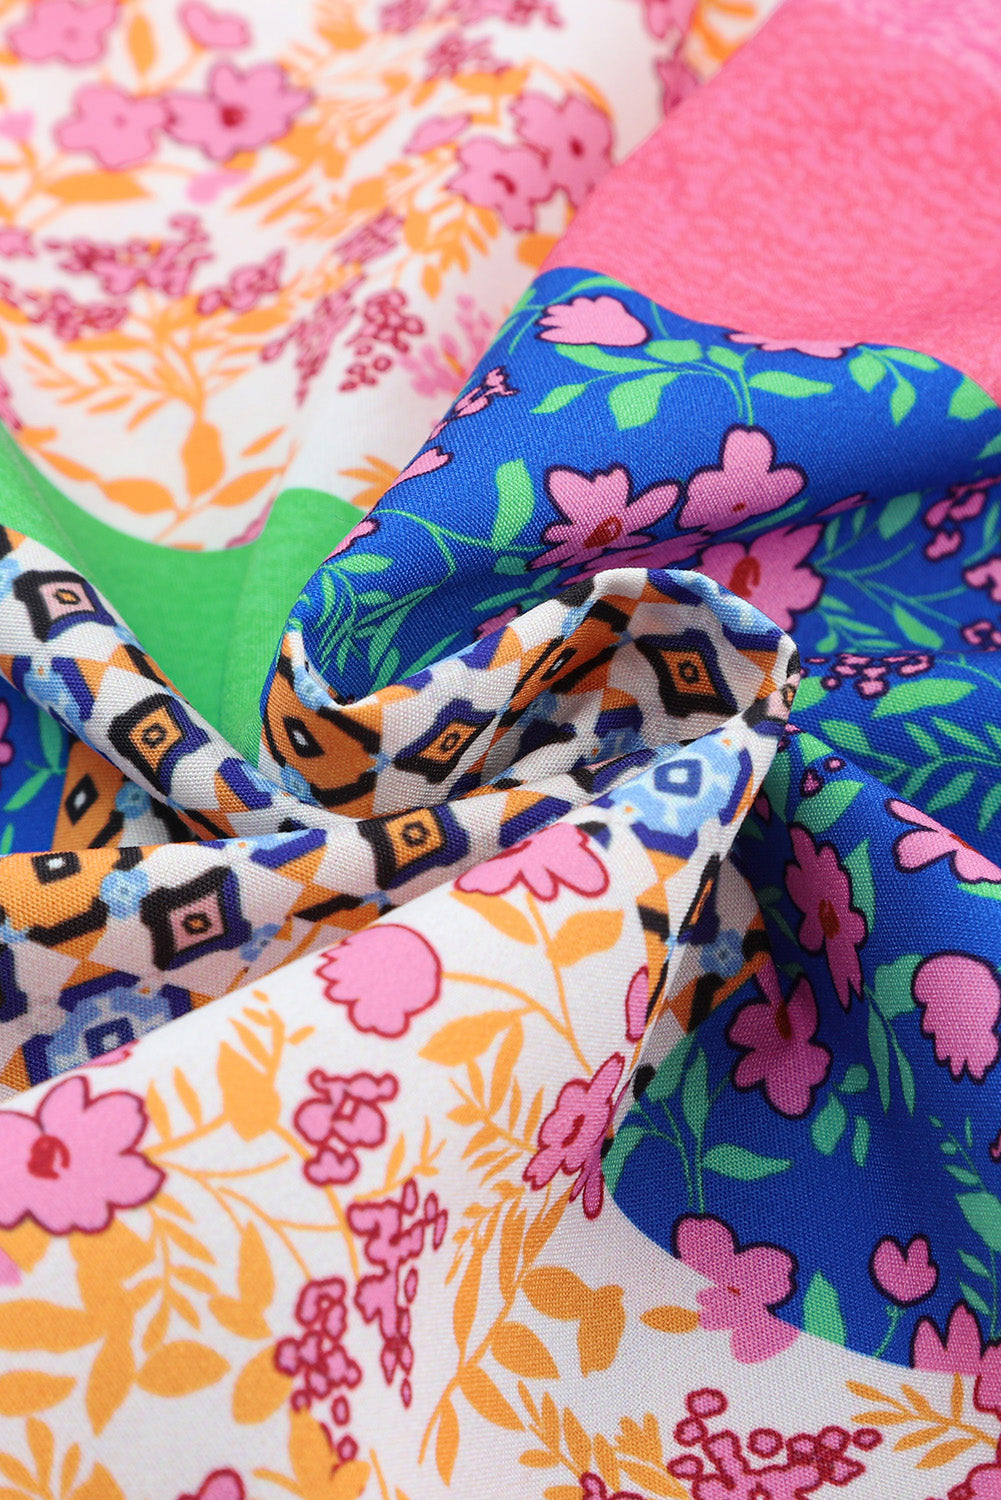 Chemise à manches bouffantes boutonnée à imprimé floral multicolore